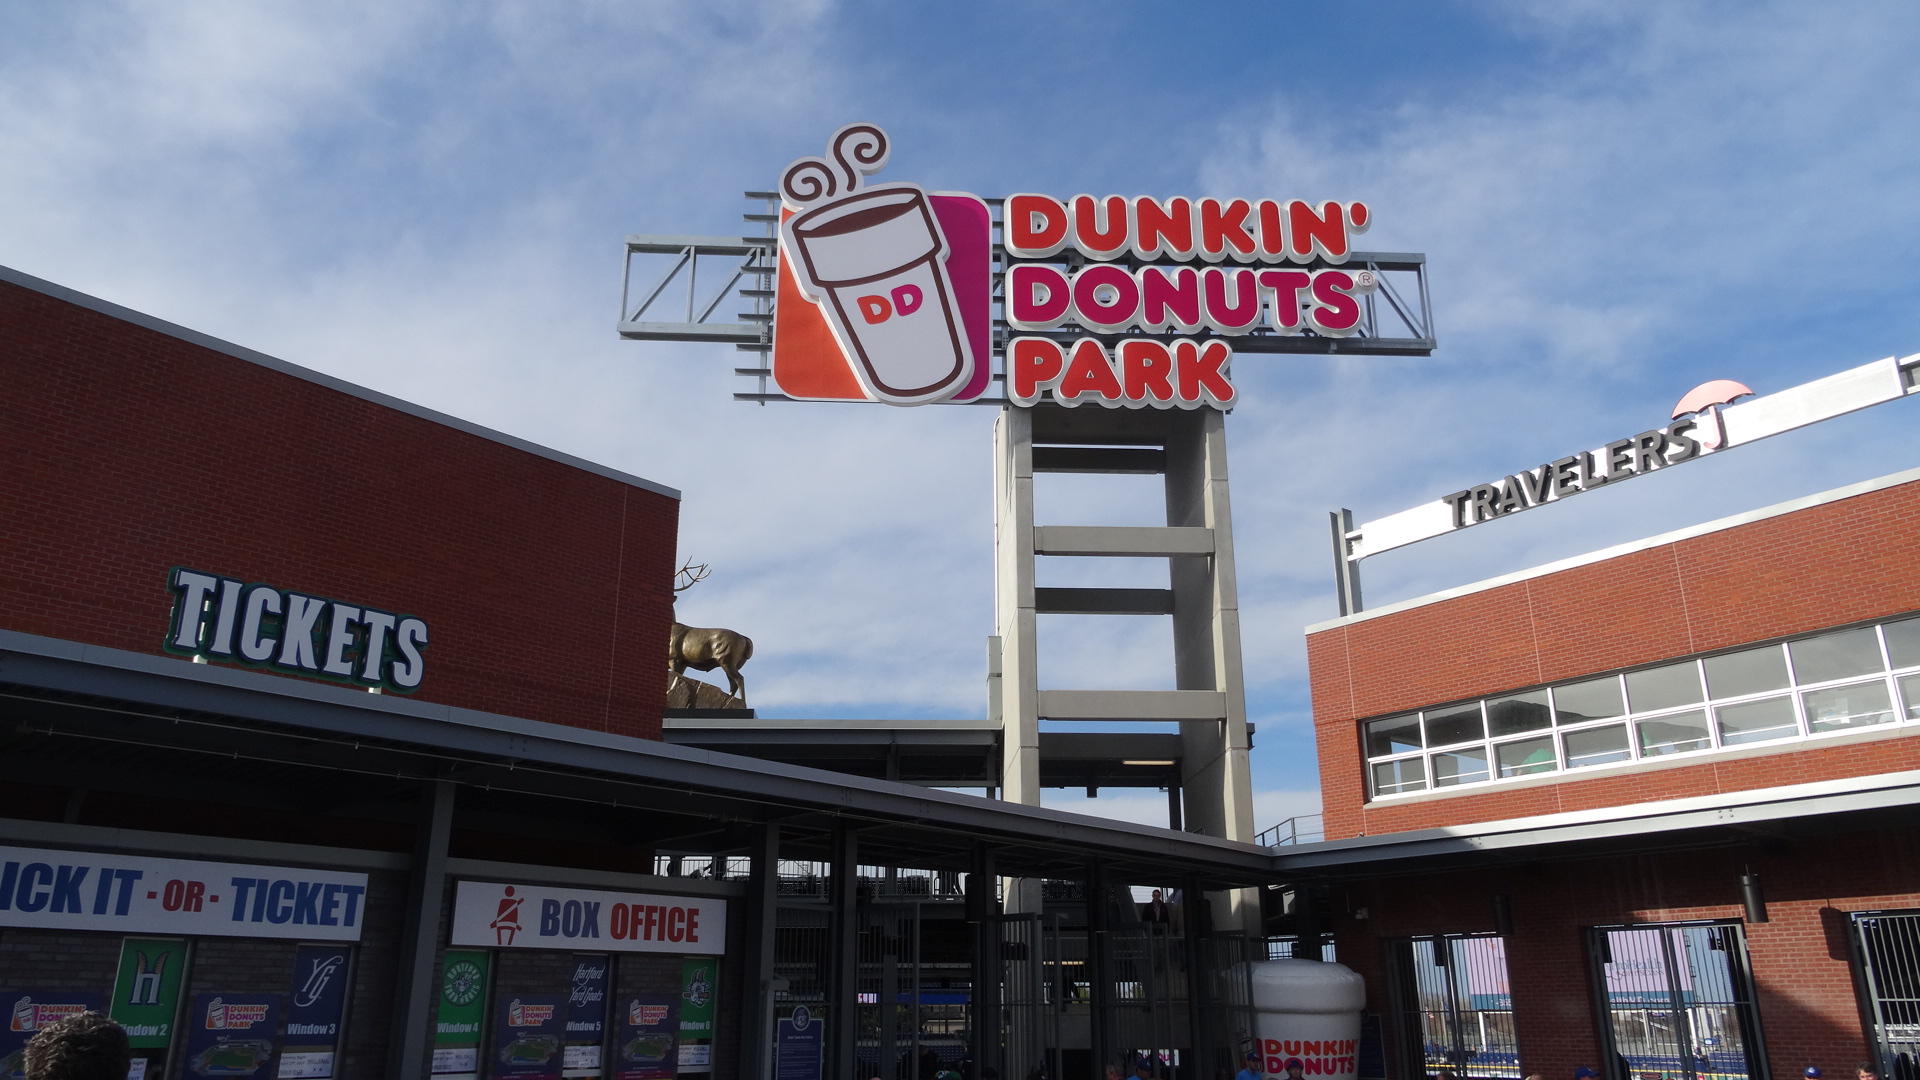 Dunkin' Donuts Park / Hartford Yard Goats